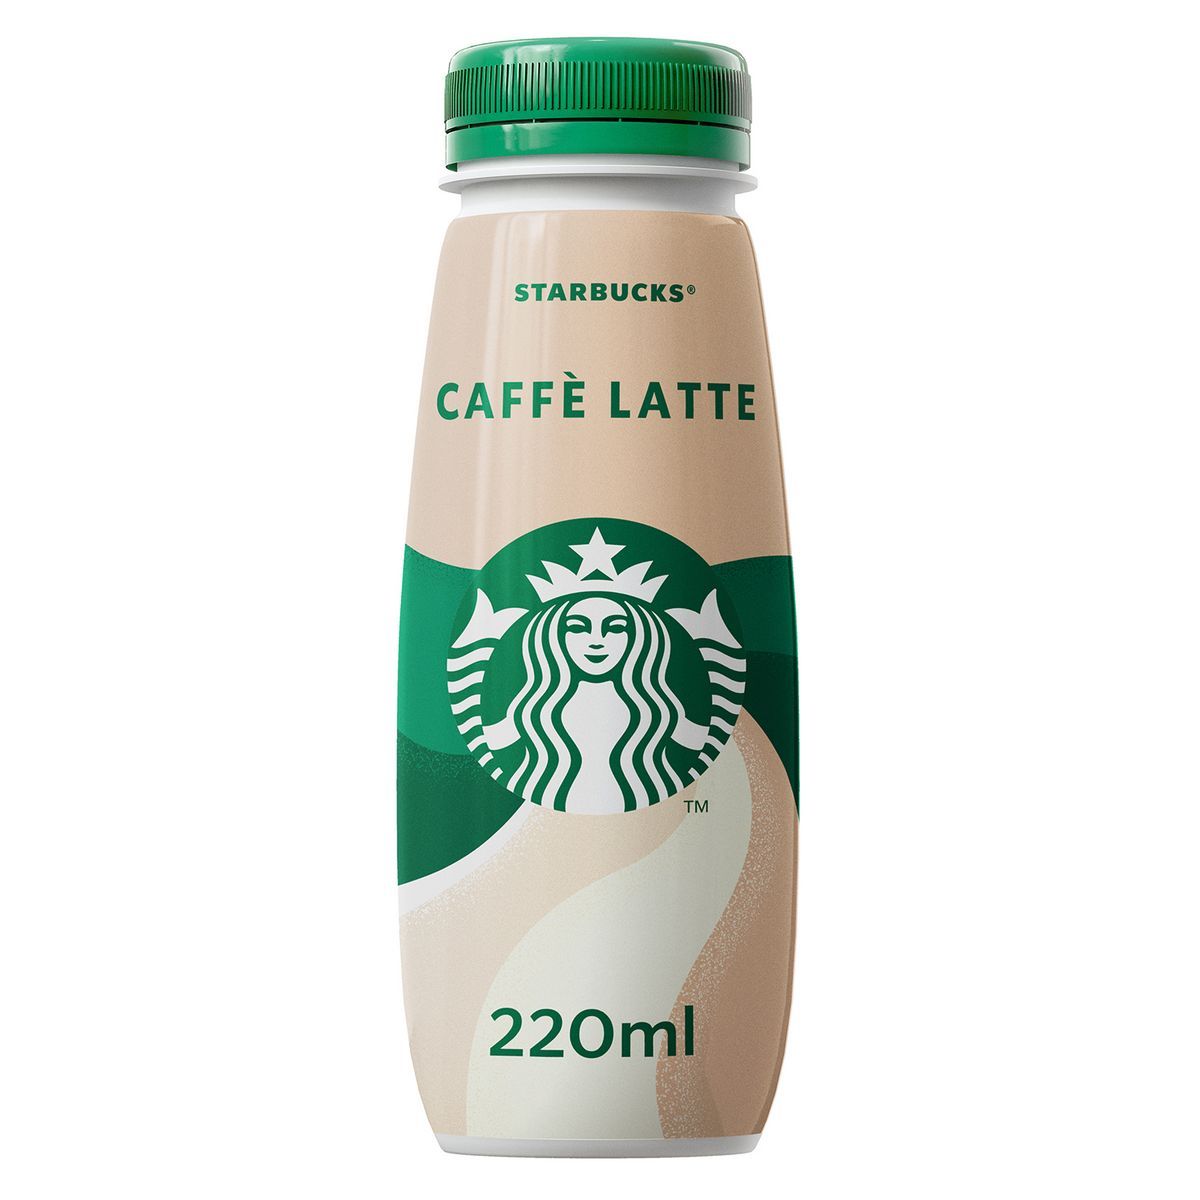 CAFFE LATTE STARBUCKS